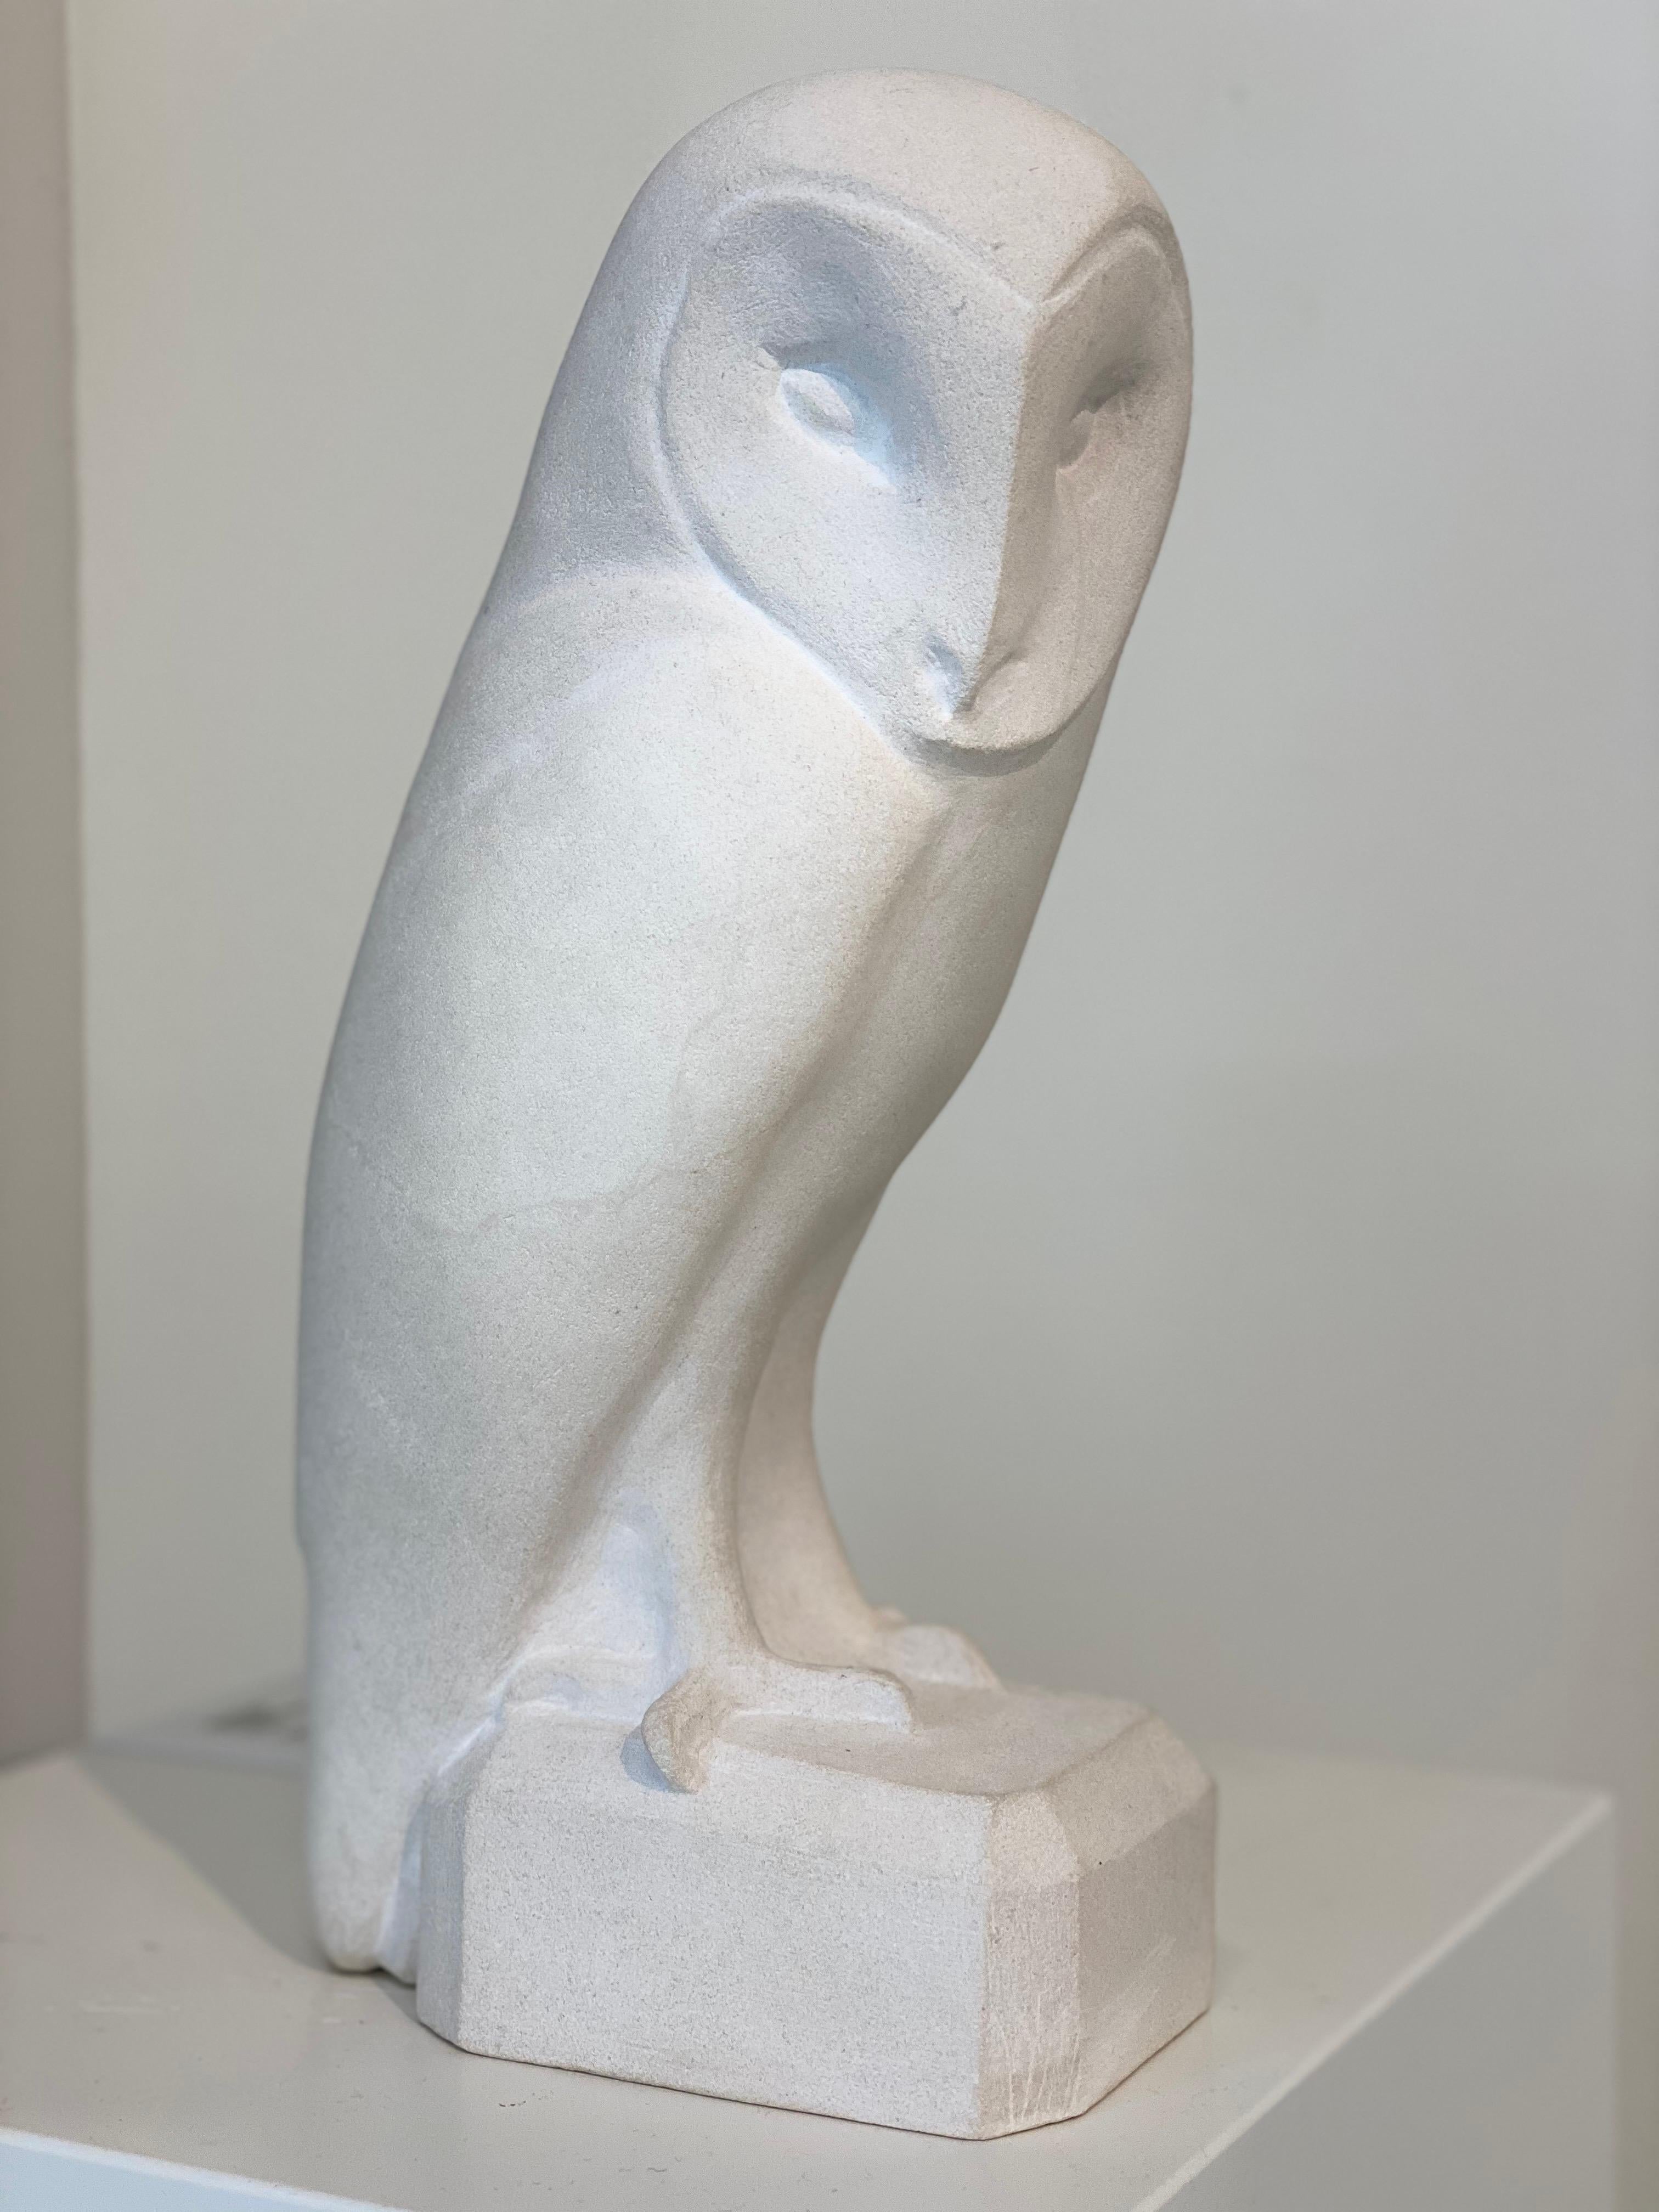 Jaap Deelder Figurative Sculpture - Barn Owl- 21st Century Dutch limestone sculpture of an owl 